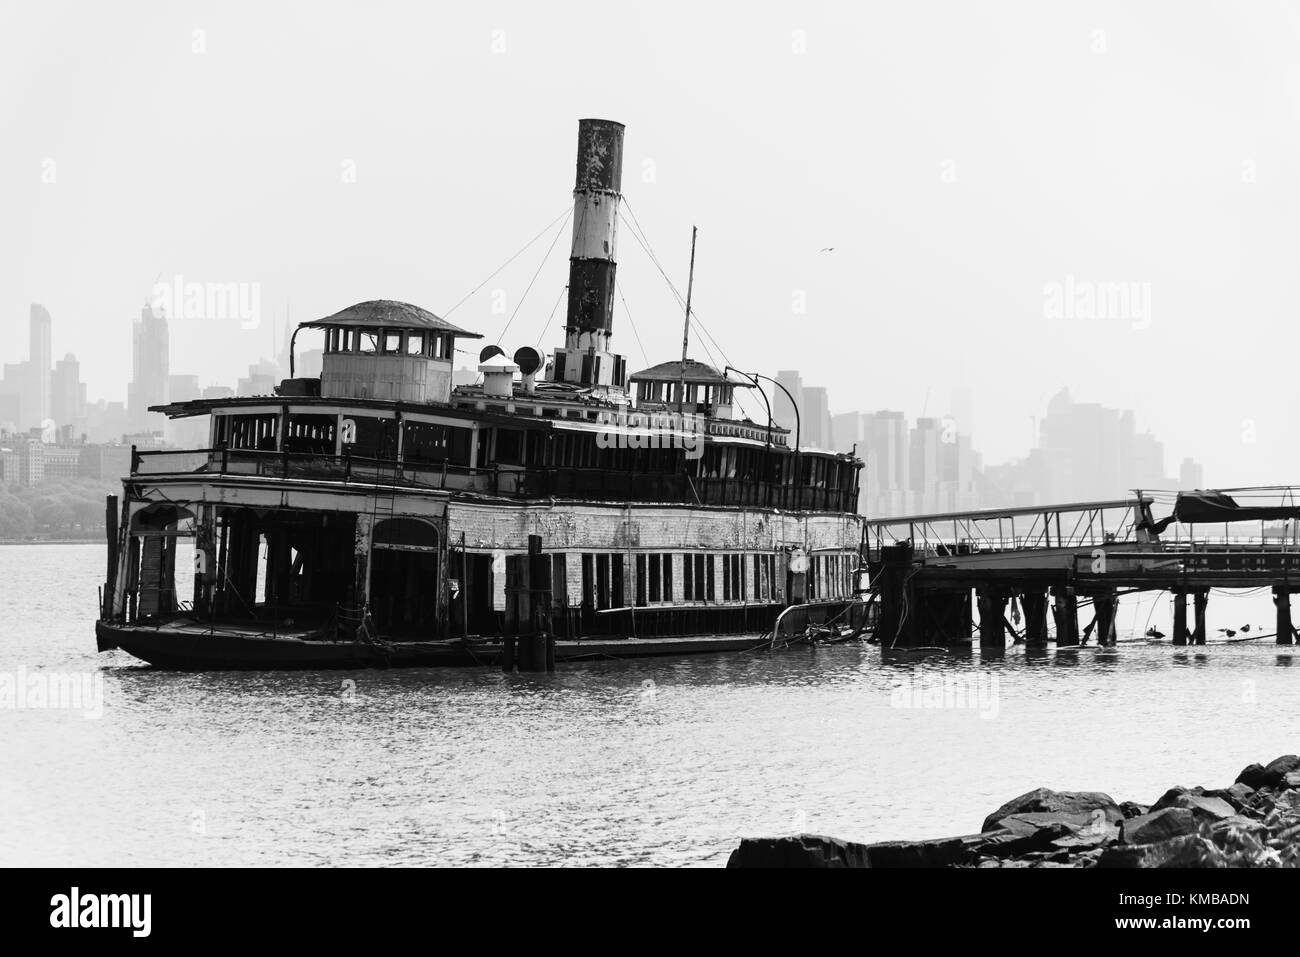 Die Fähre Binghamton, ein Arbeitstier, das auf dem Hudson River für mehr als ein Jahrhundert serviert. manhatan im Hintergrund Stockfoto